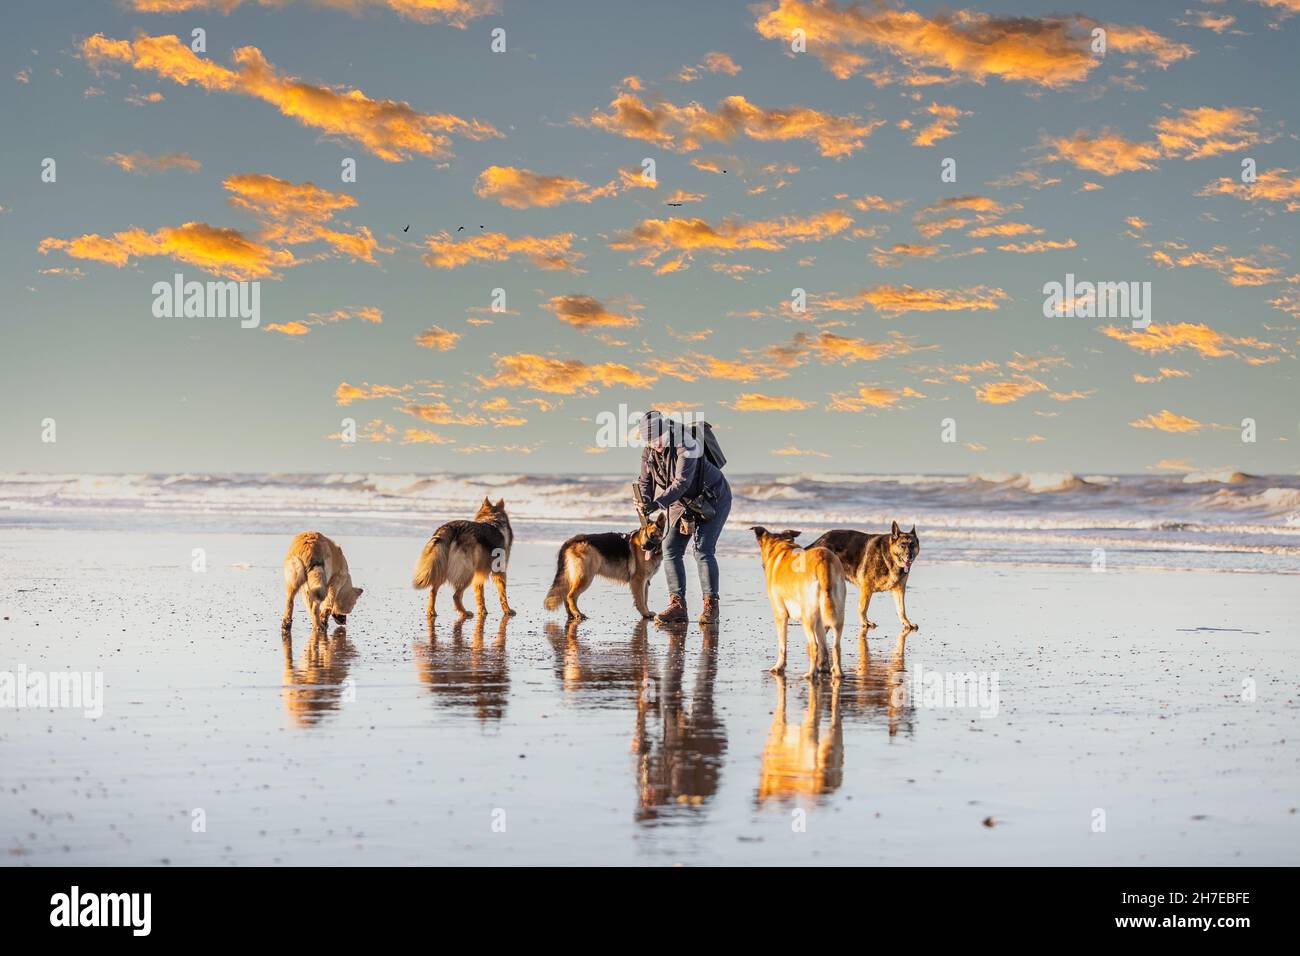 Femme avec cinq bergers allemands sur la plage dans la lumière chaude du soleil levant sur un fond de nuages orange dispersés et de surf de la mer Banque D'Images